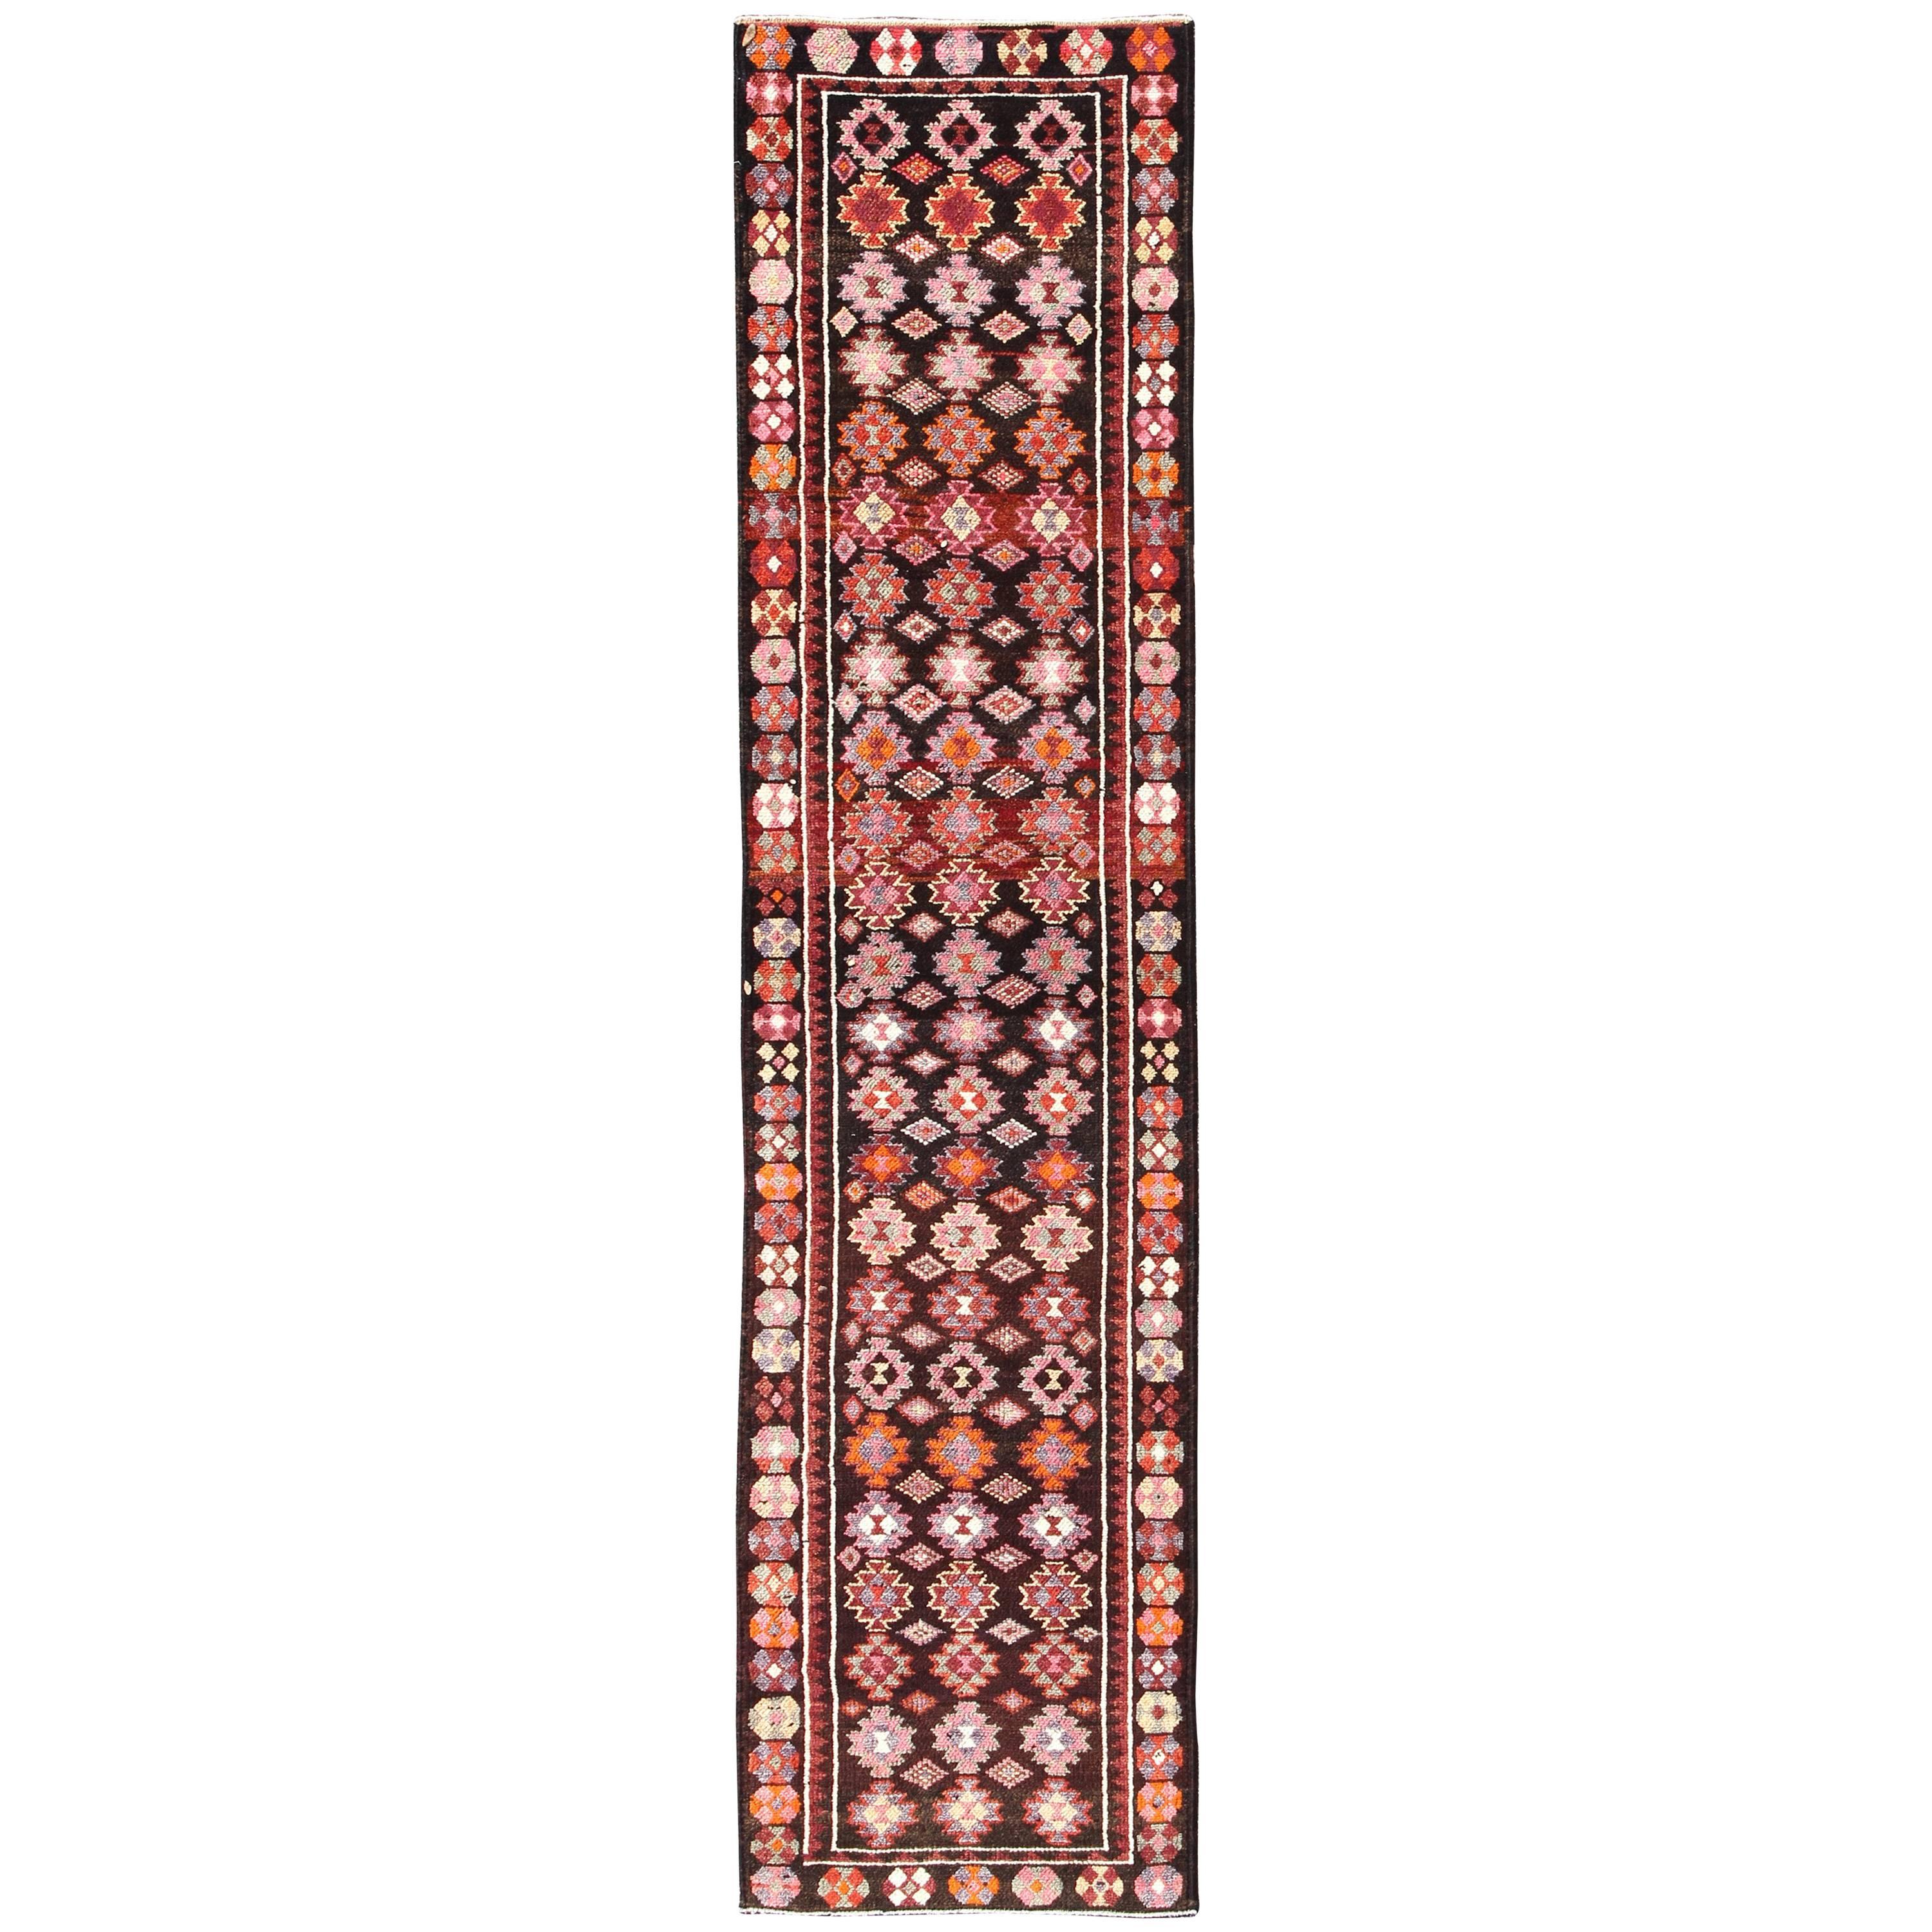 Tapis de couloir turc Oushak vintage coloré à fond marron avec motif géométrique